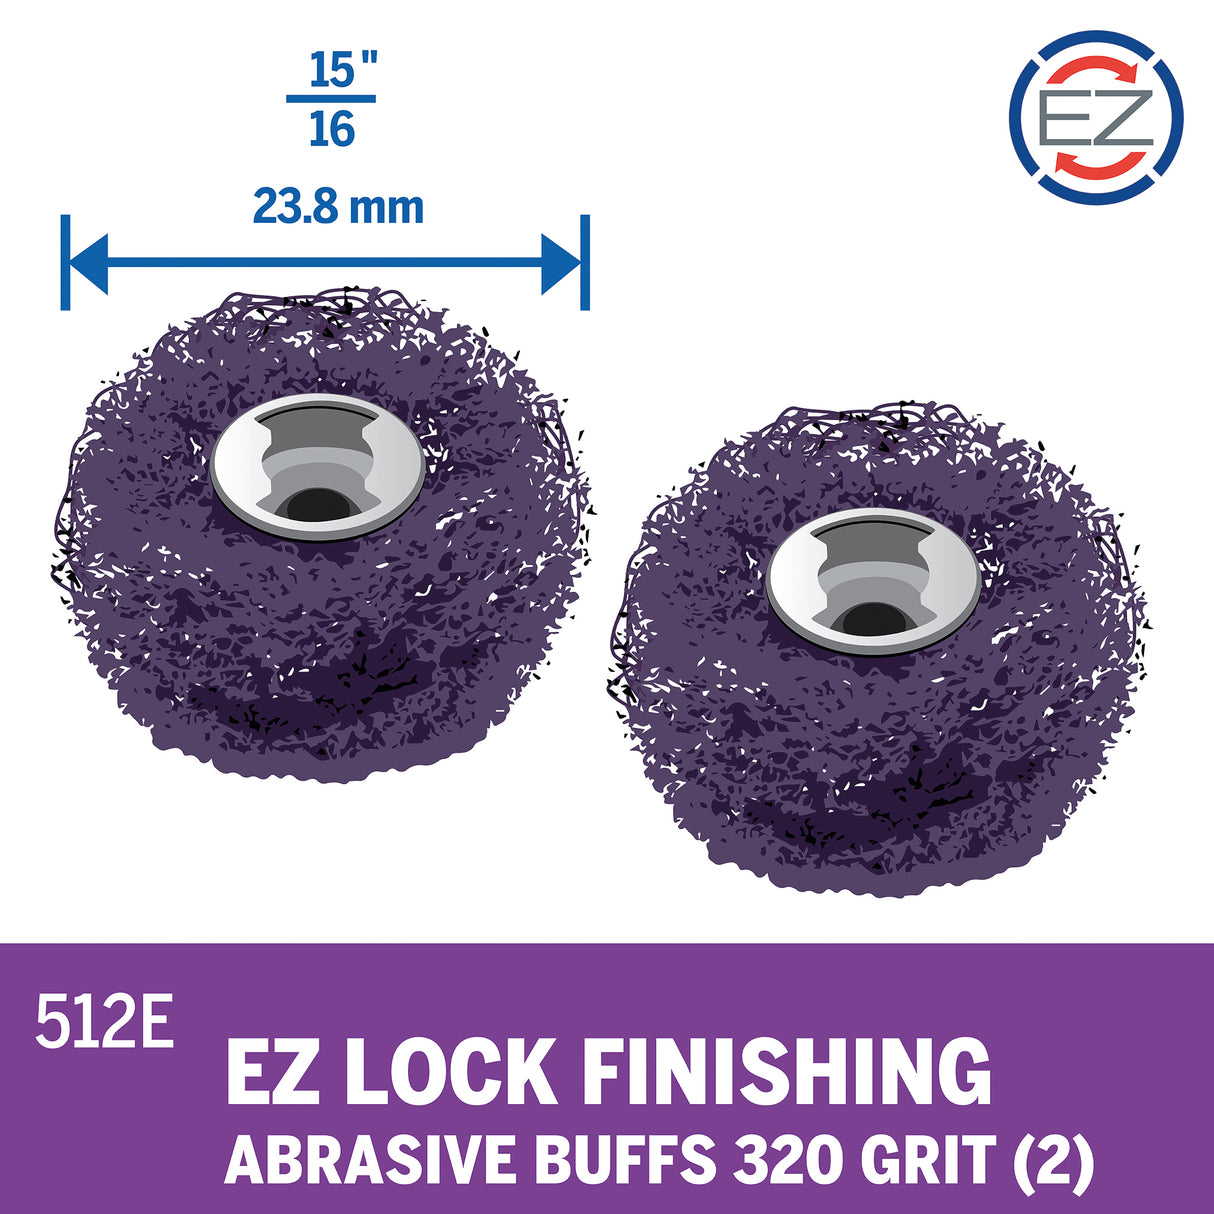 Dremel EZ Lock Finishing Abrasive Buffs 320 Grit (EZ512) - 2 Pack - Hobbytech Toys